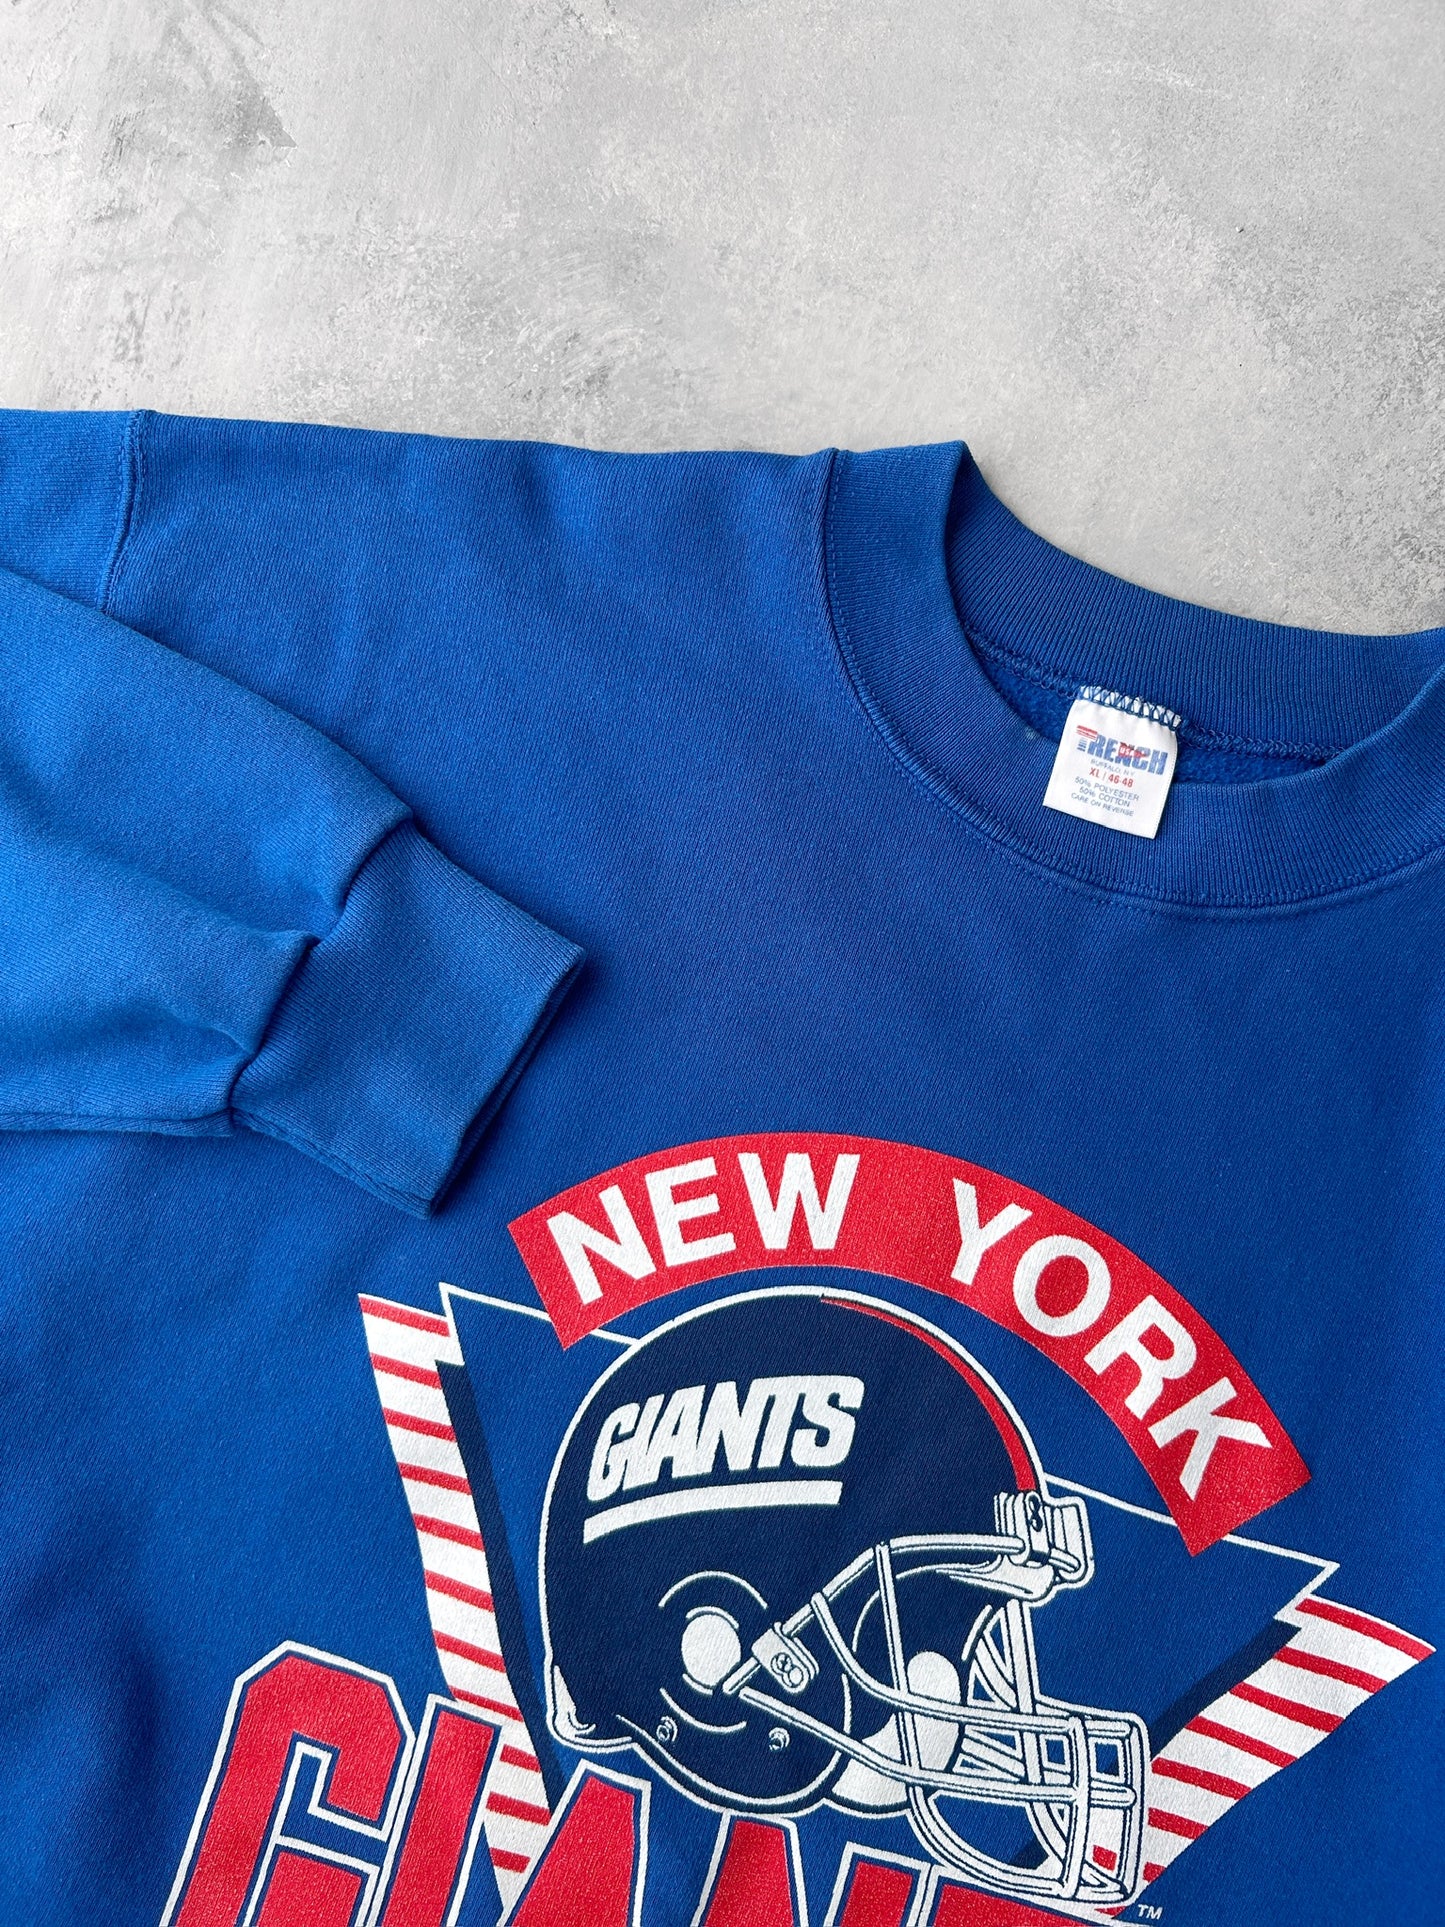 New York Giants Sweatshirt 90's - XL